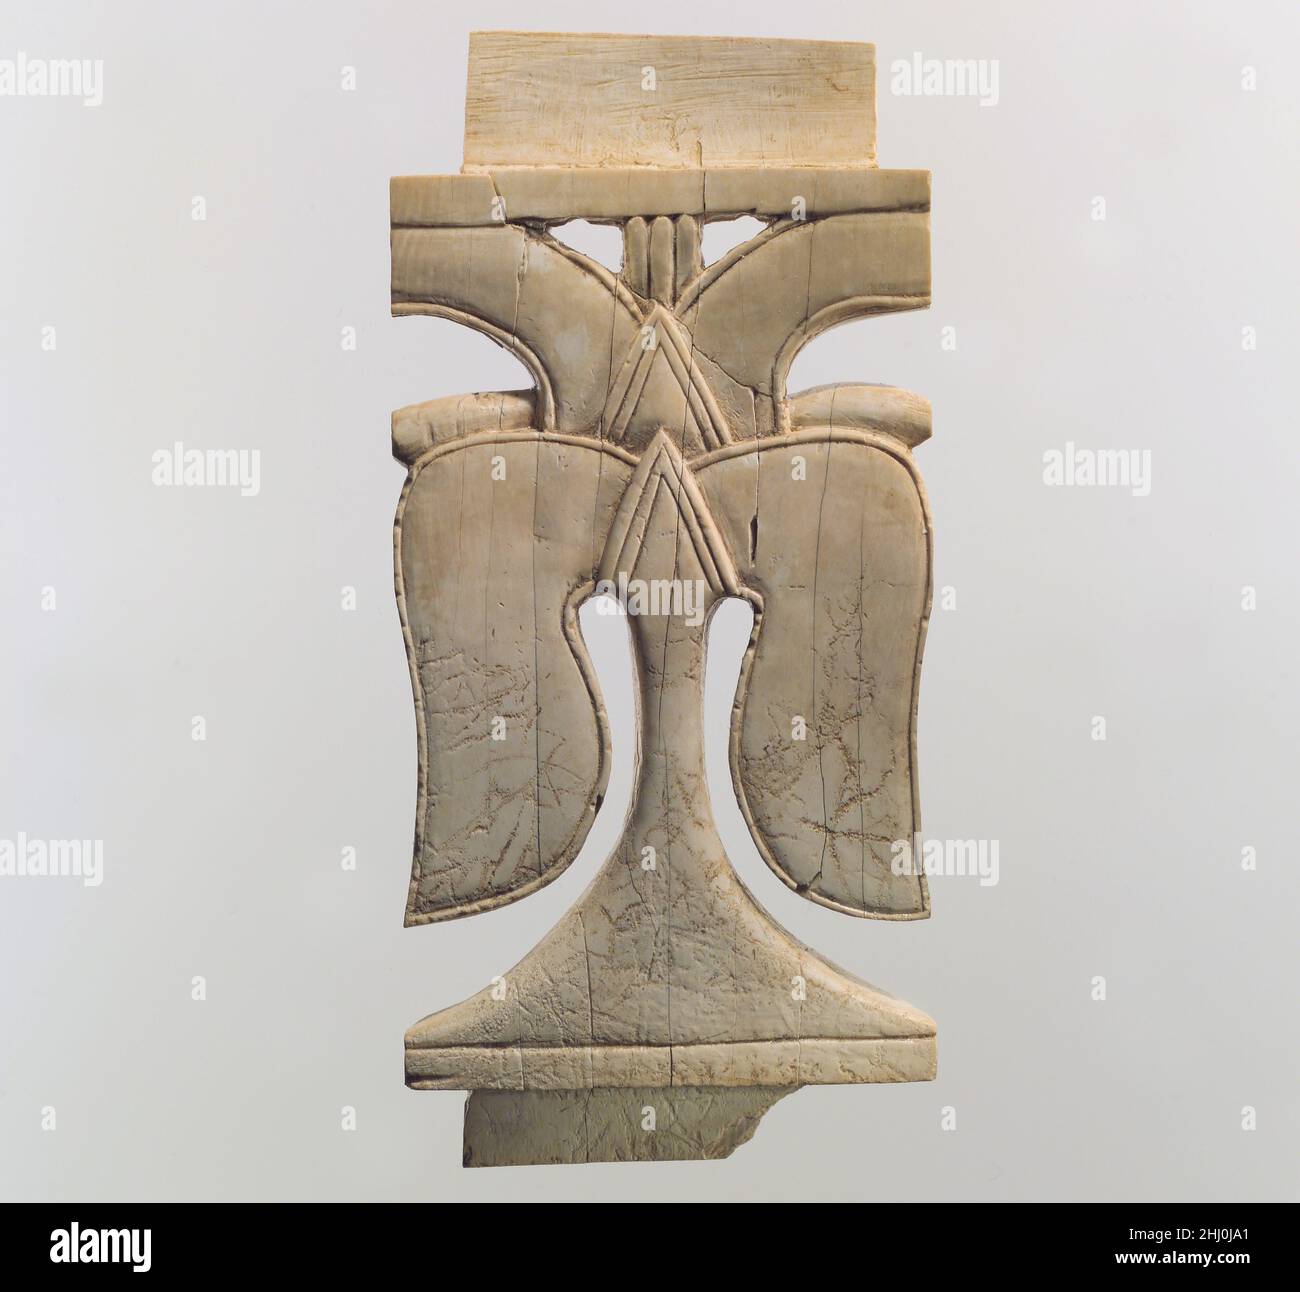 Placa de muebles de apertura con hojas de Ca. Siglo 9th–8th a.C. Asirio  Durante el primer milenio a.C., la talla de marfil fue una de las artes de  lujo más importantes que